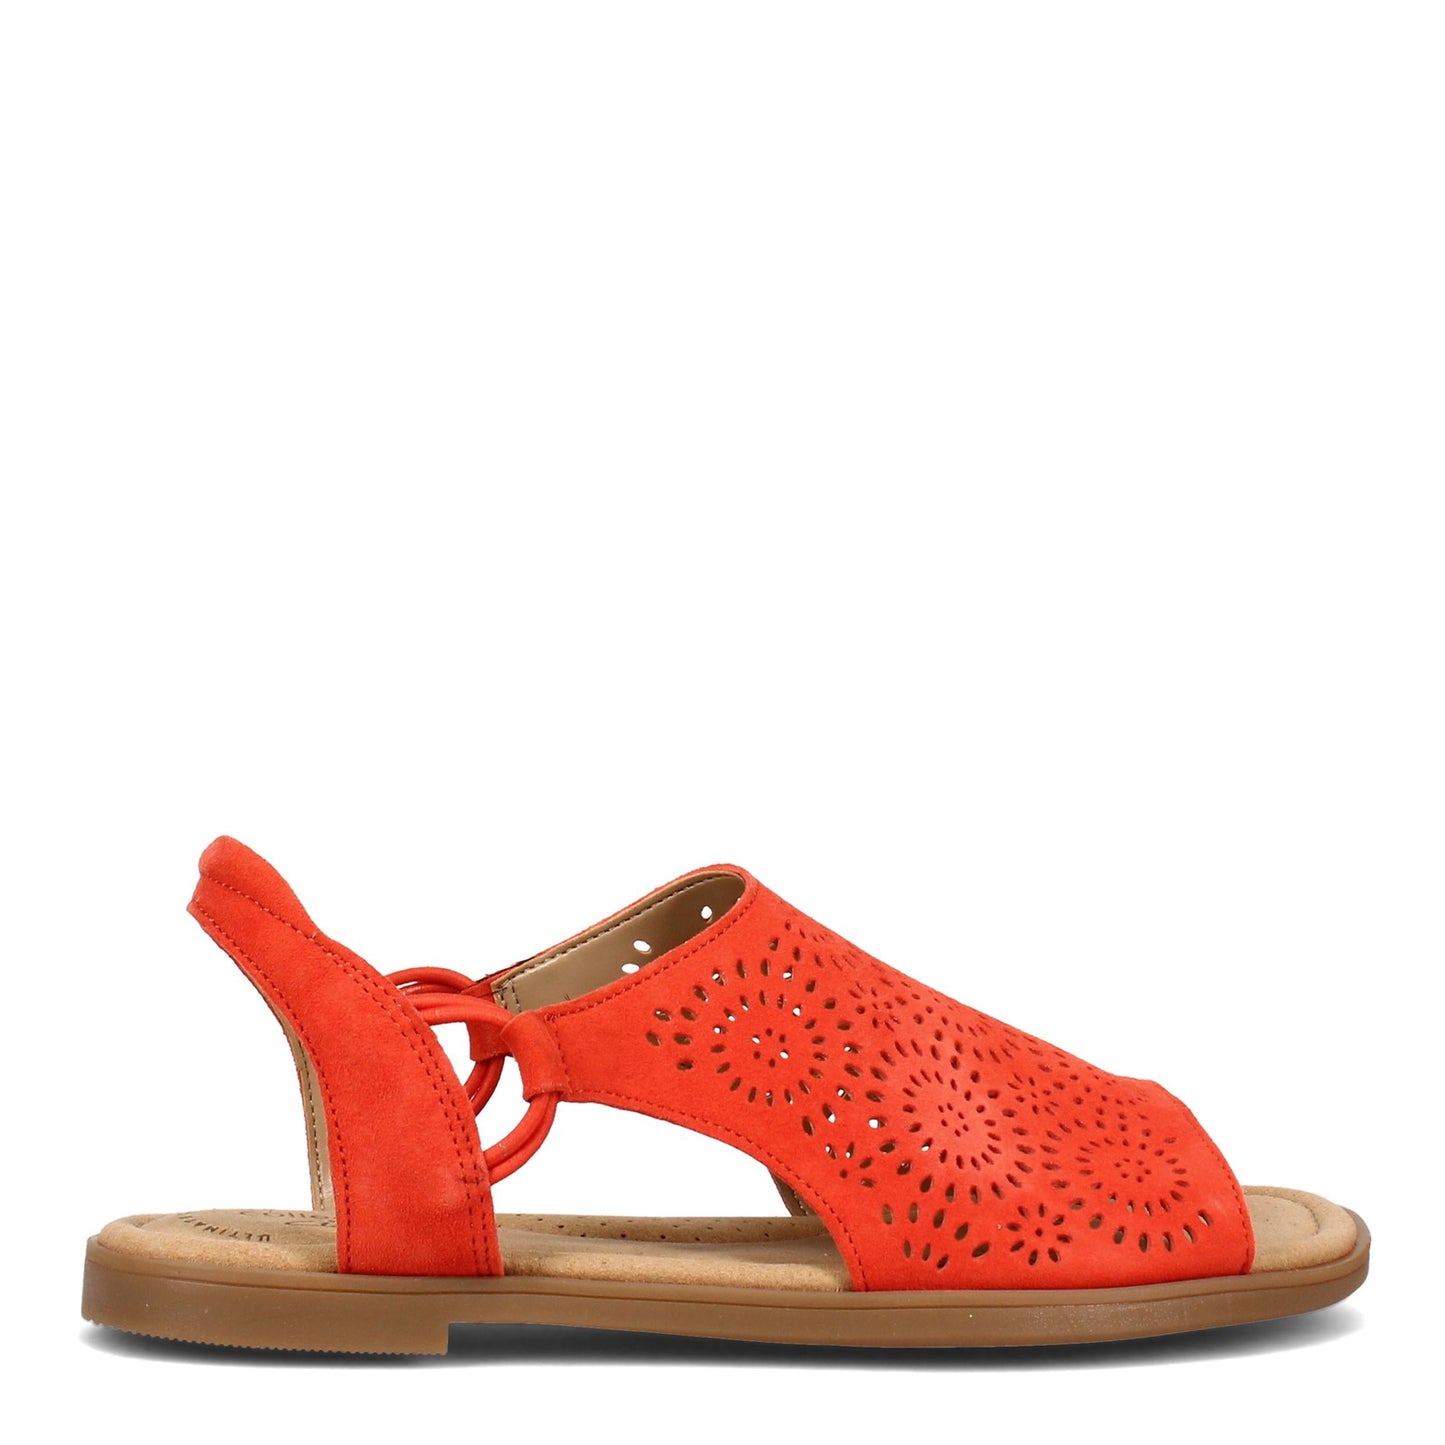 Peltz Shoes  Women's Clarks Reyna Swirl Sandal ORANGE 26157688